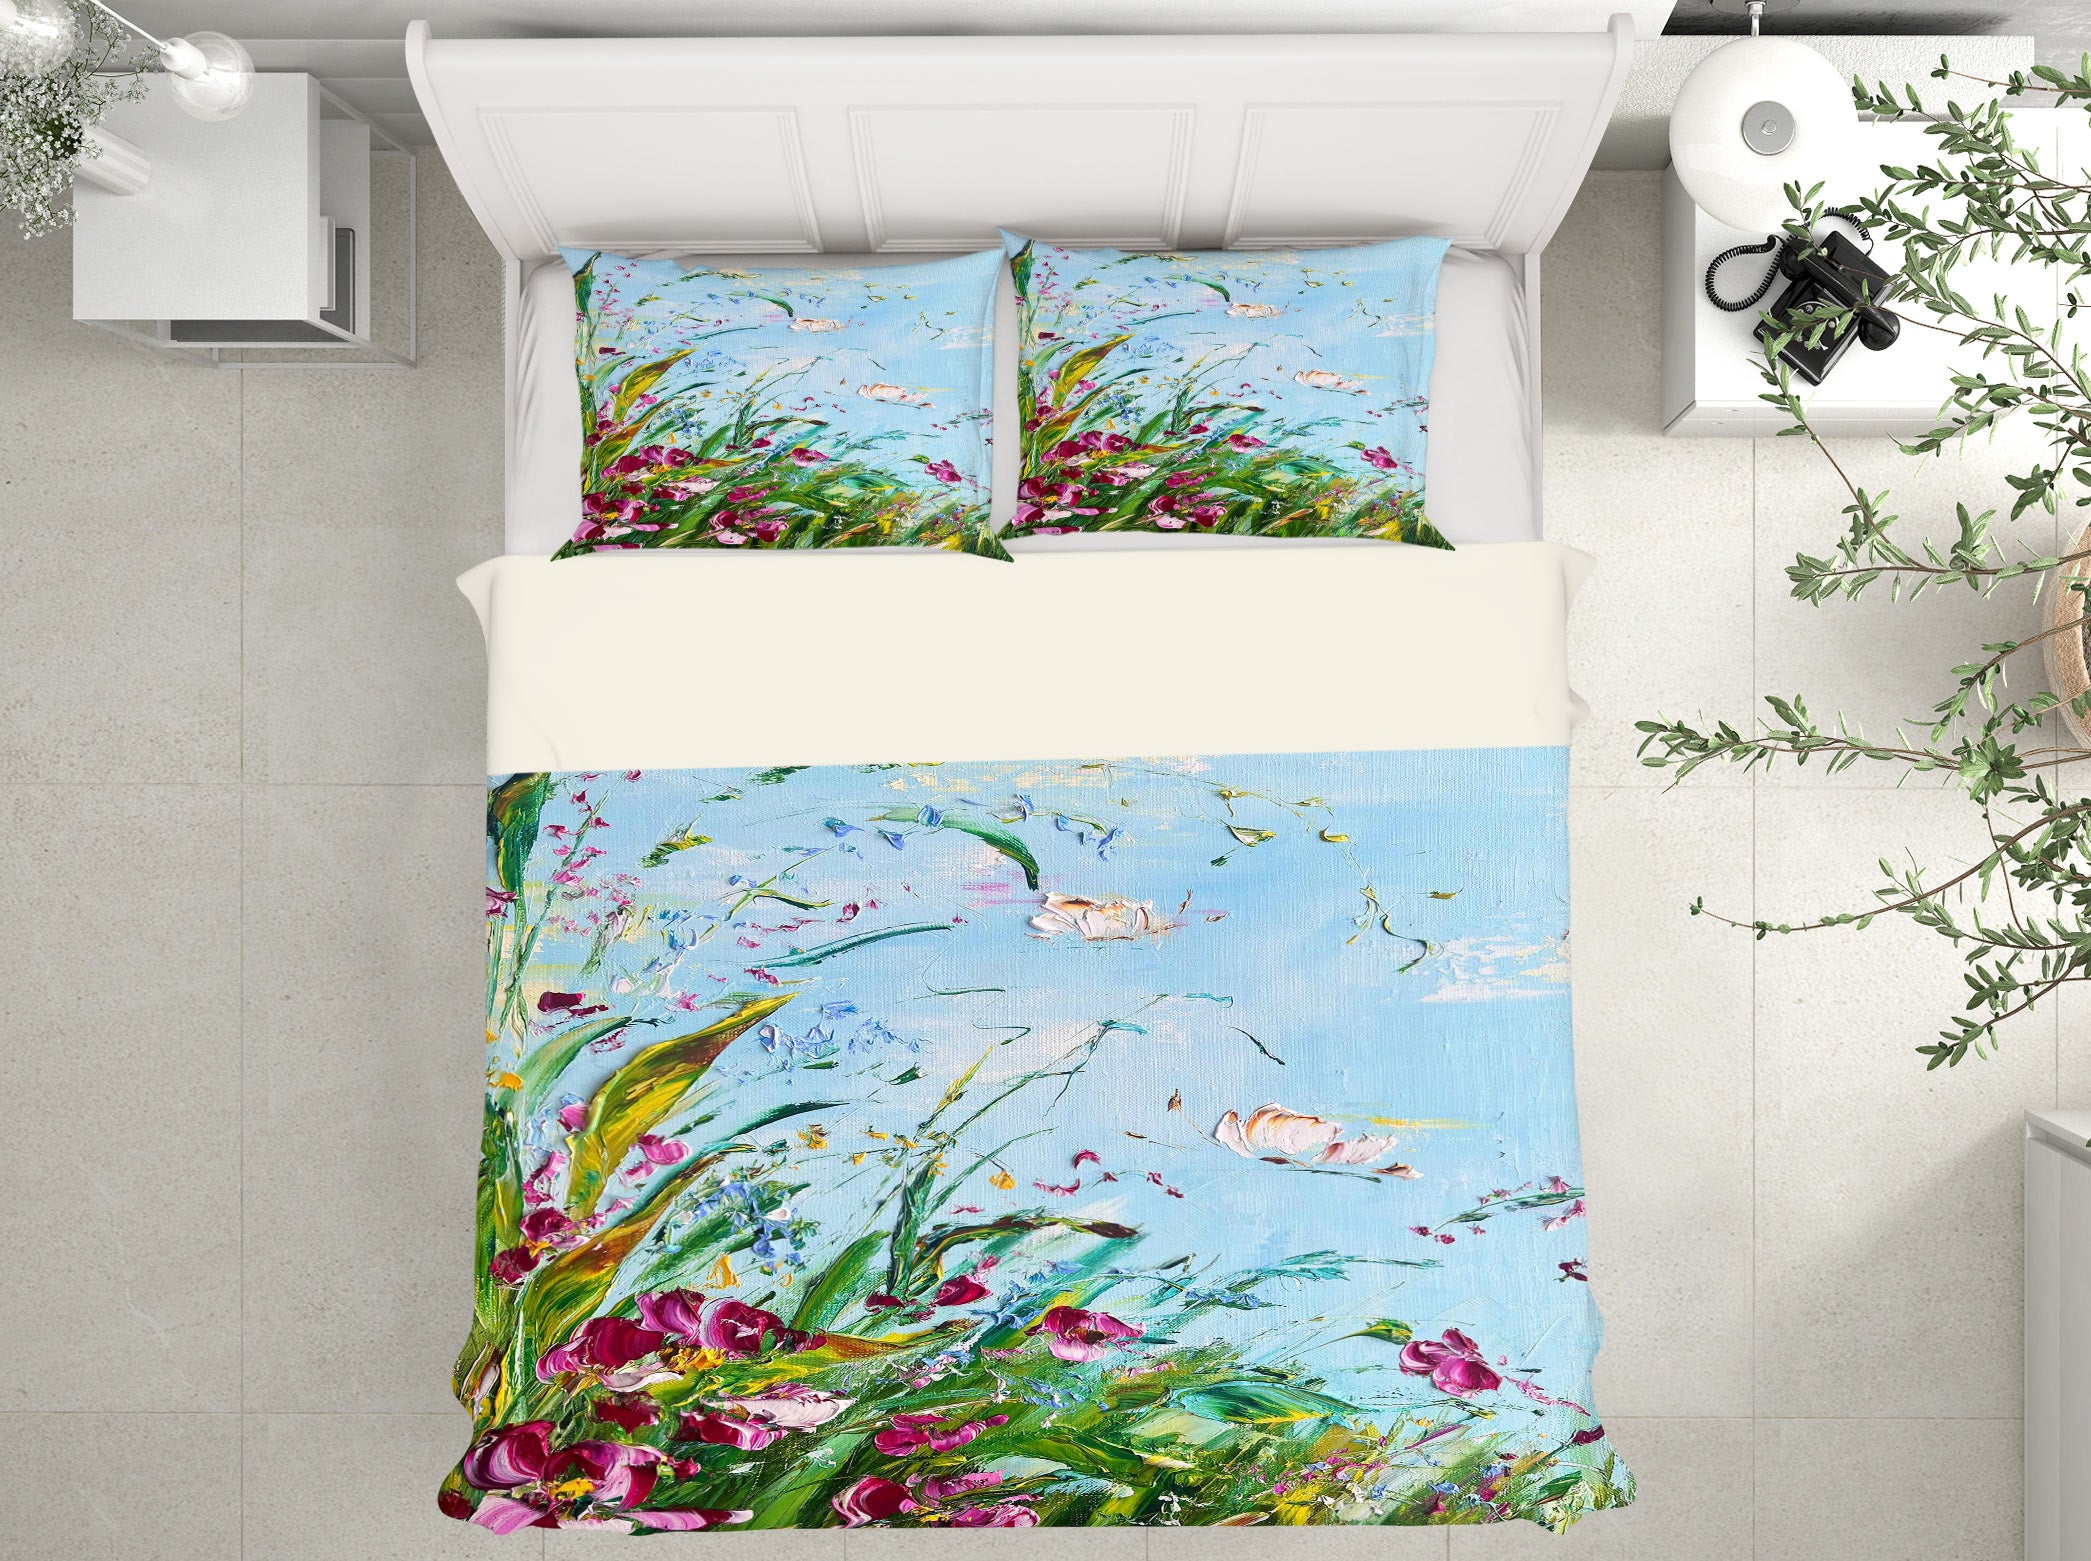 3D Garden Leaves 512 Skromova Marina Bedding Bed Pillowcases Quilt